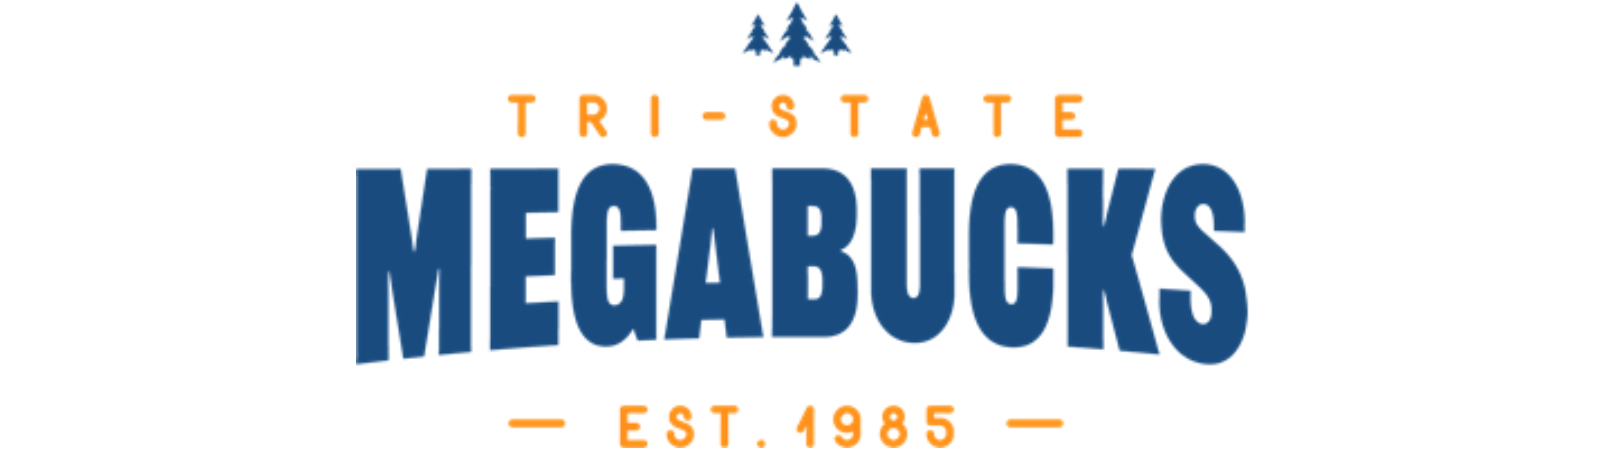 Tri-State Megabucks logo